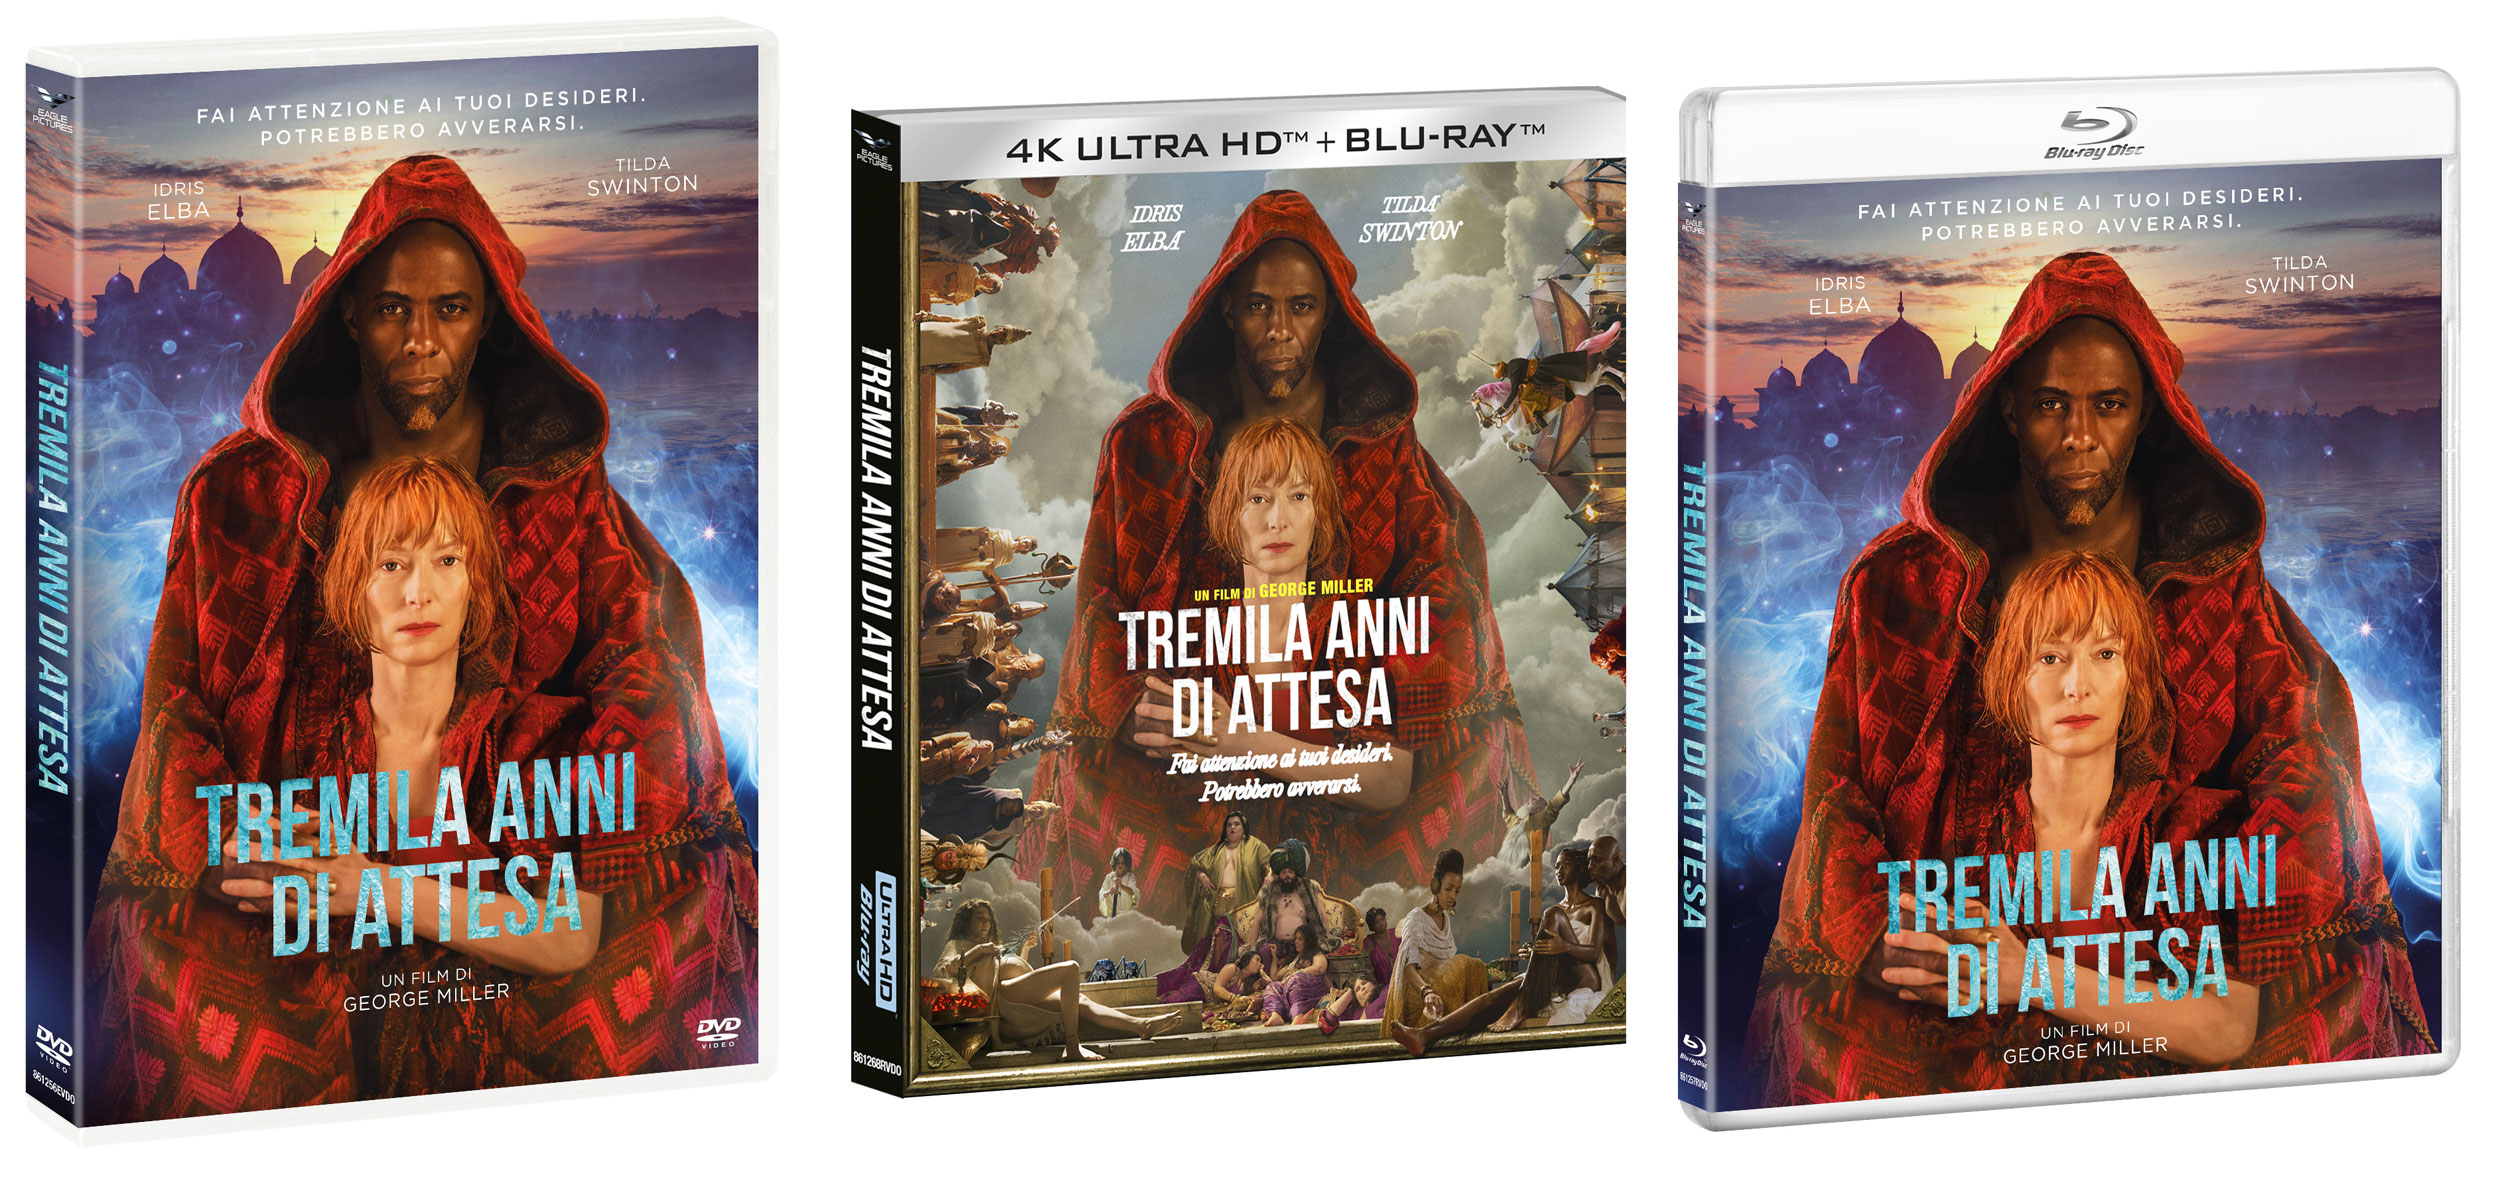 Tremila Anni di Attesa di George Miller in DVD, Blu-ray e 4K Ultra HD